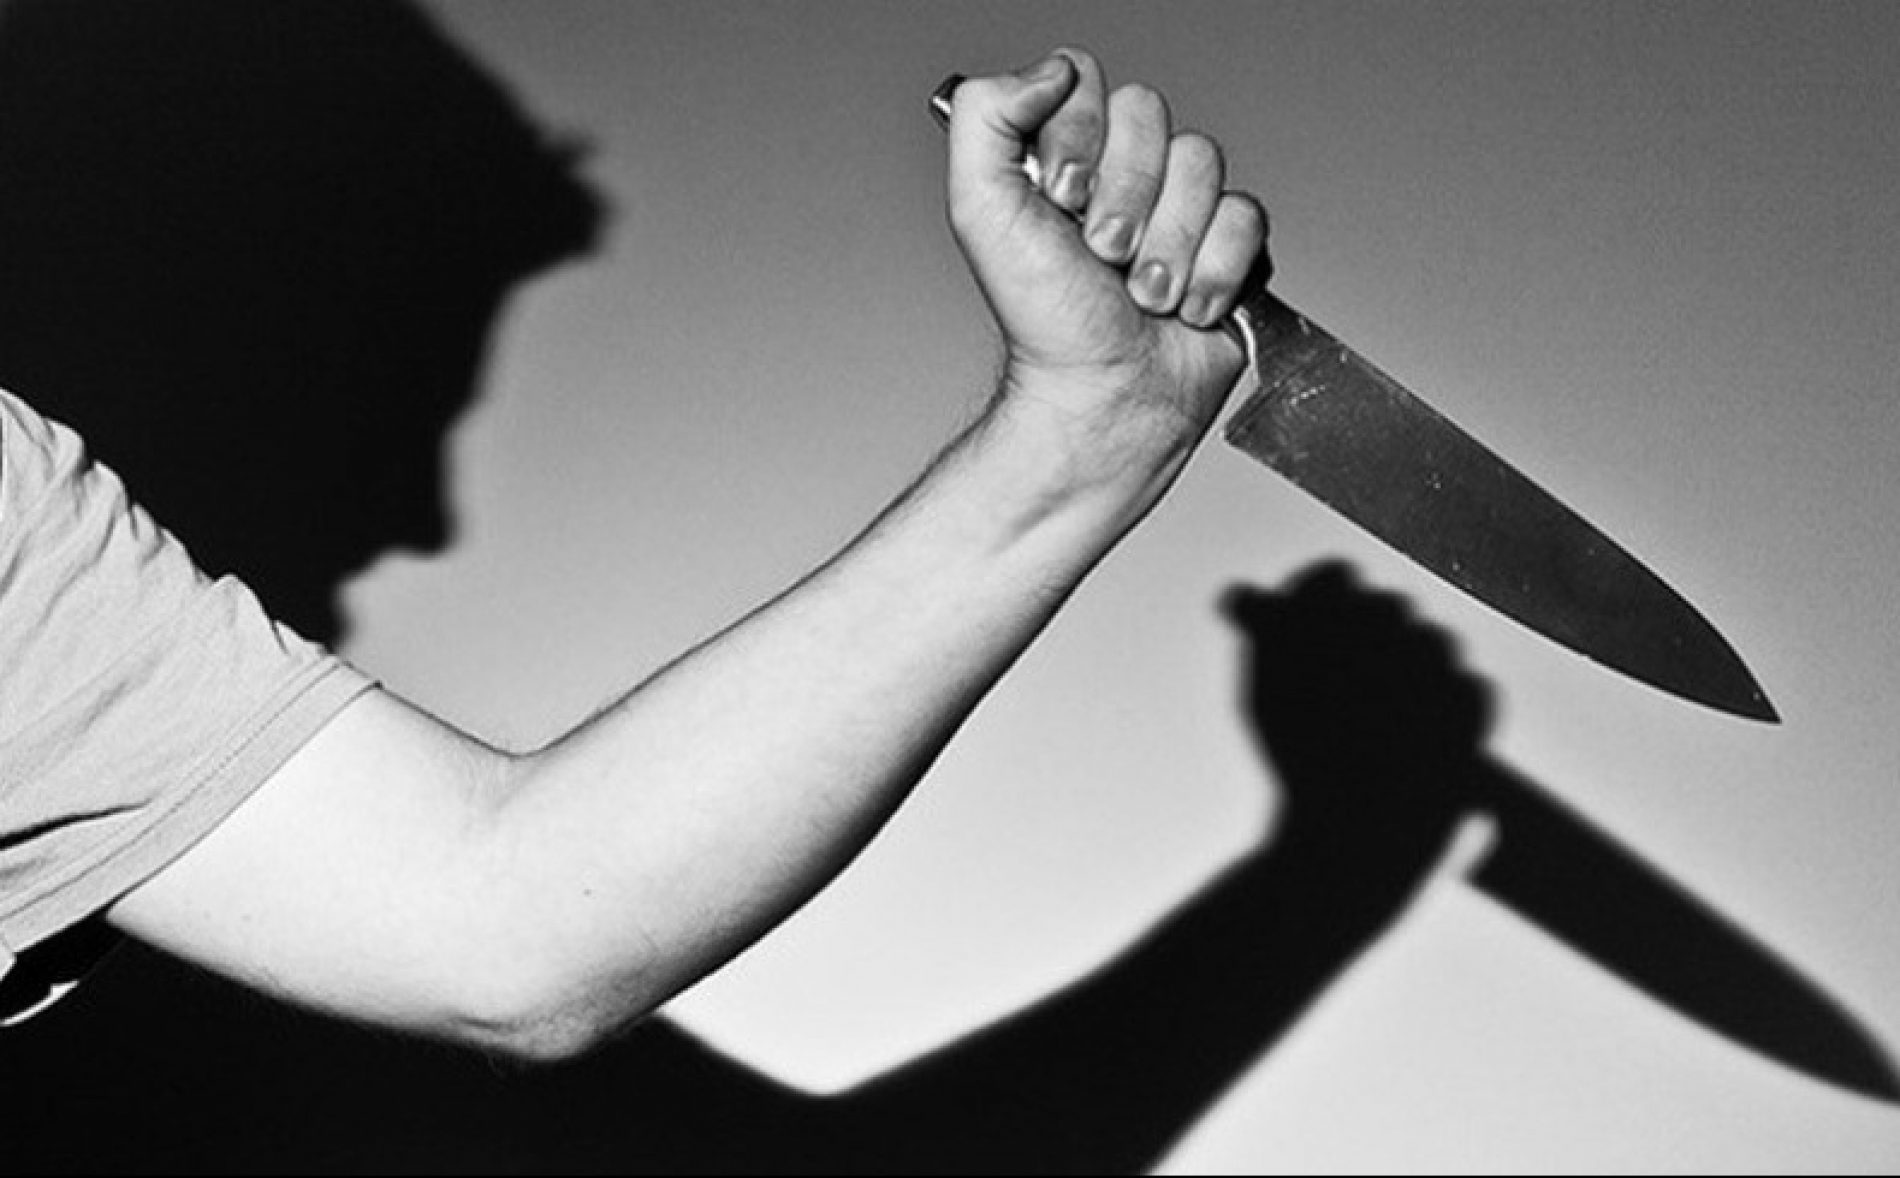 JABORANDI: Homem é preso após ameaçar companheira com uma faca